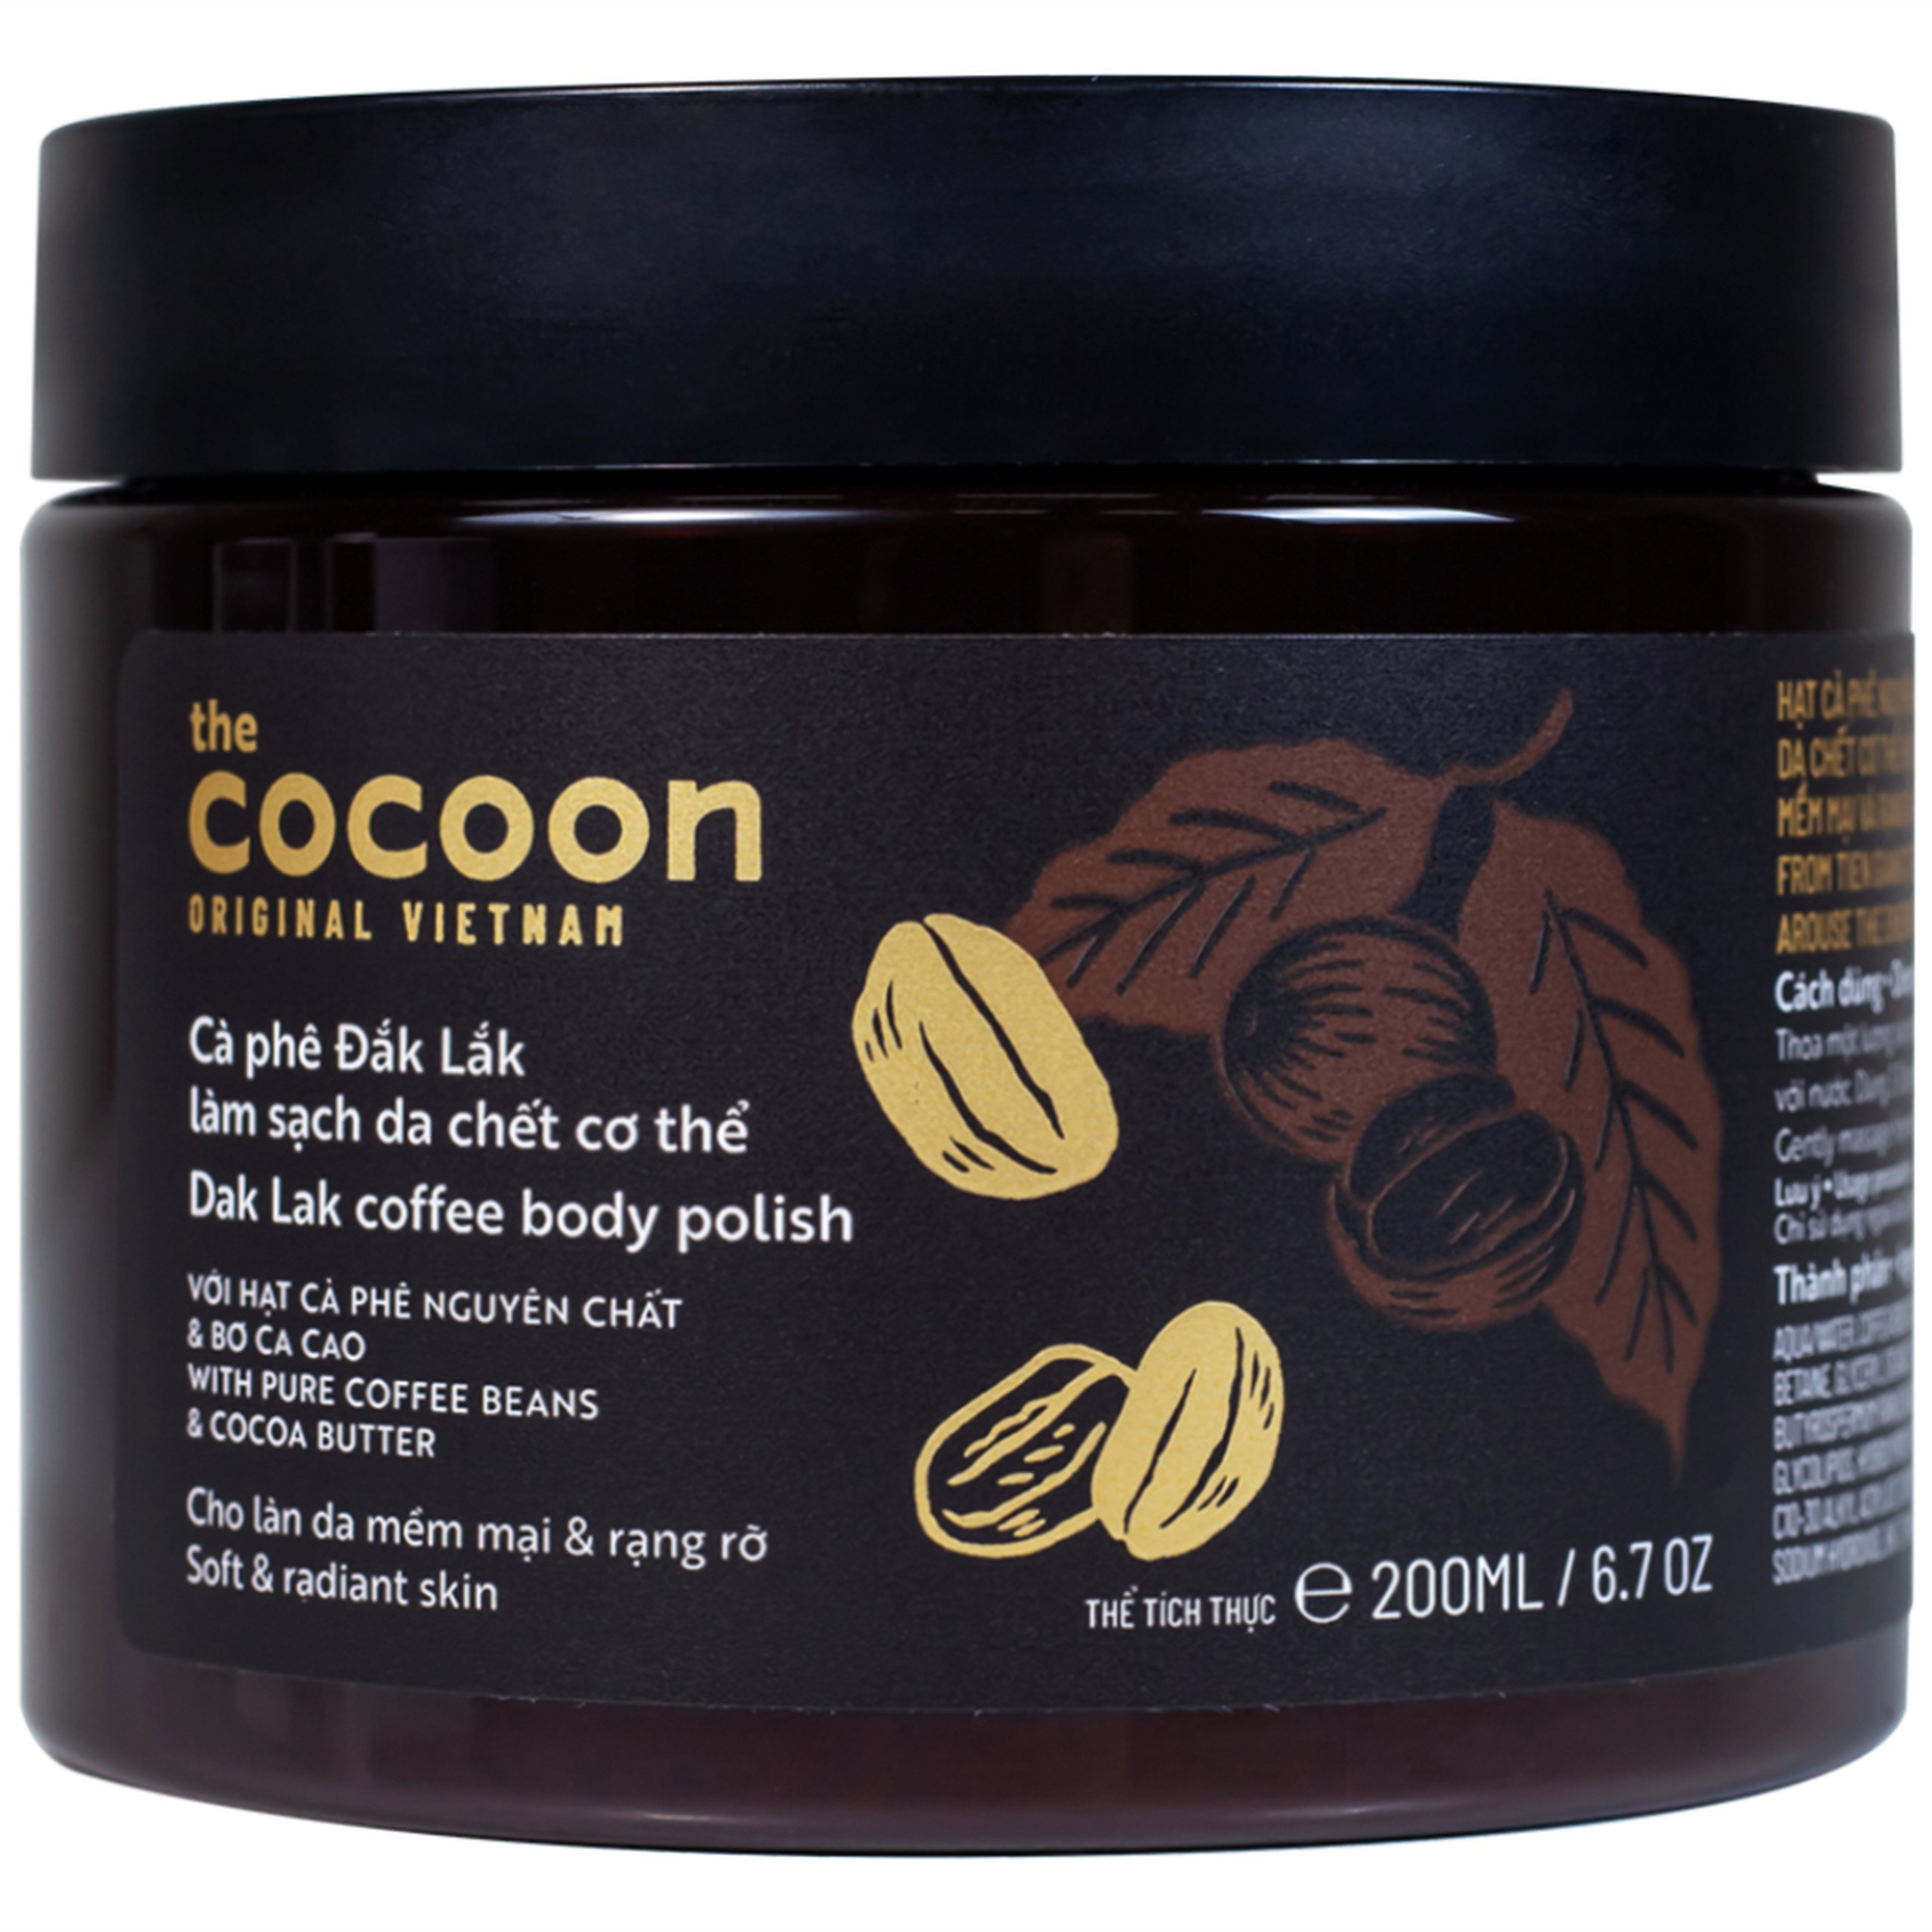 Cà phê Đắk Lắk Cocoon làm sạch da chết trên cơ thể (200ml)